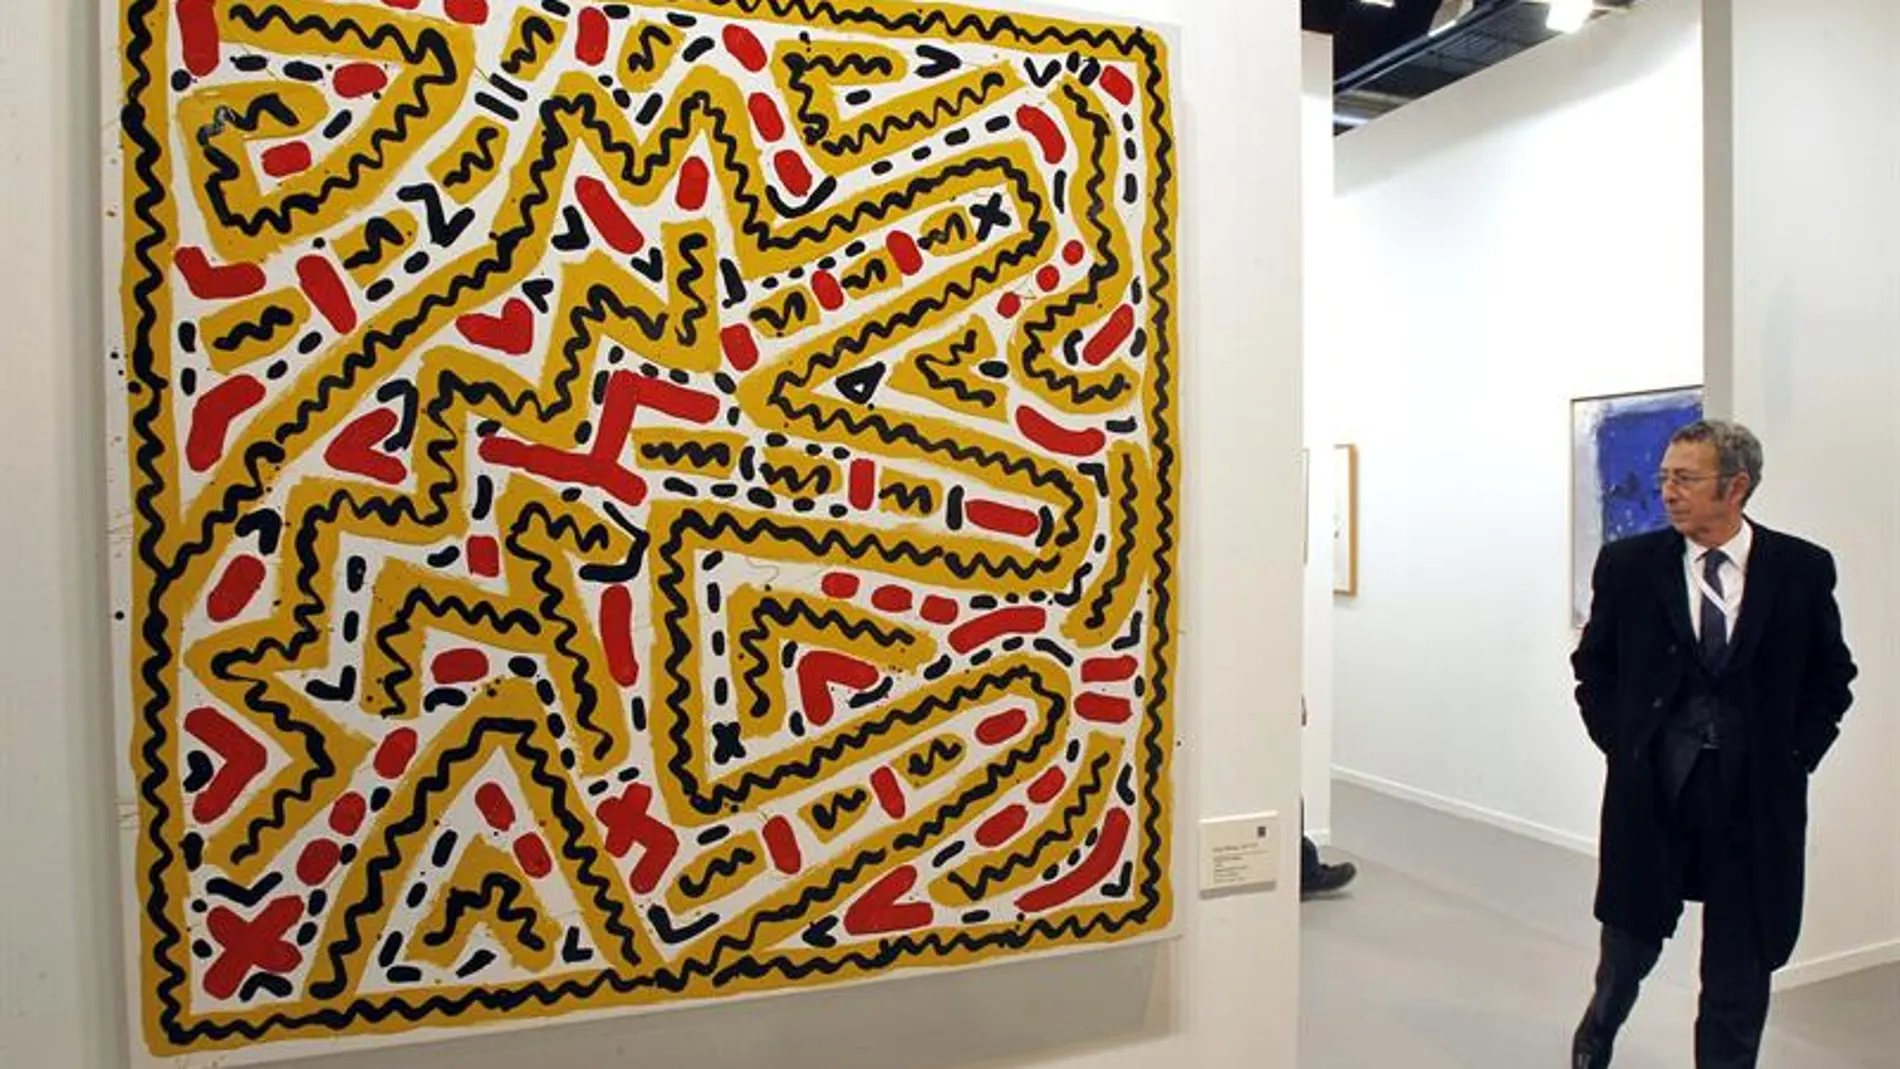 Un hombre pasa ante la obra "Untitlet" de Keith Haring que se podrá contemplar en ARCO